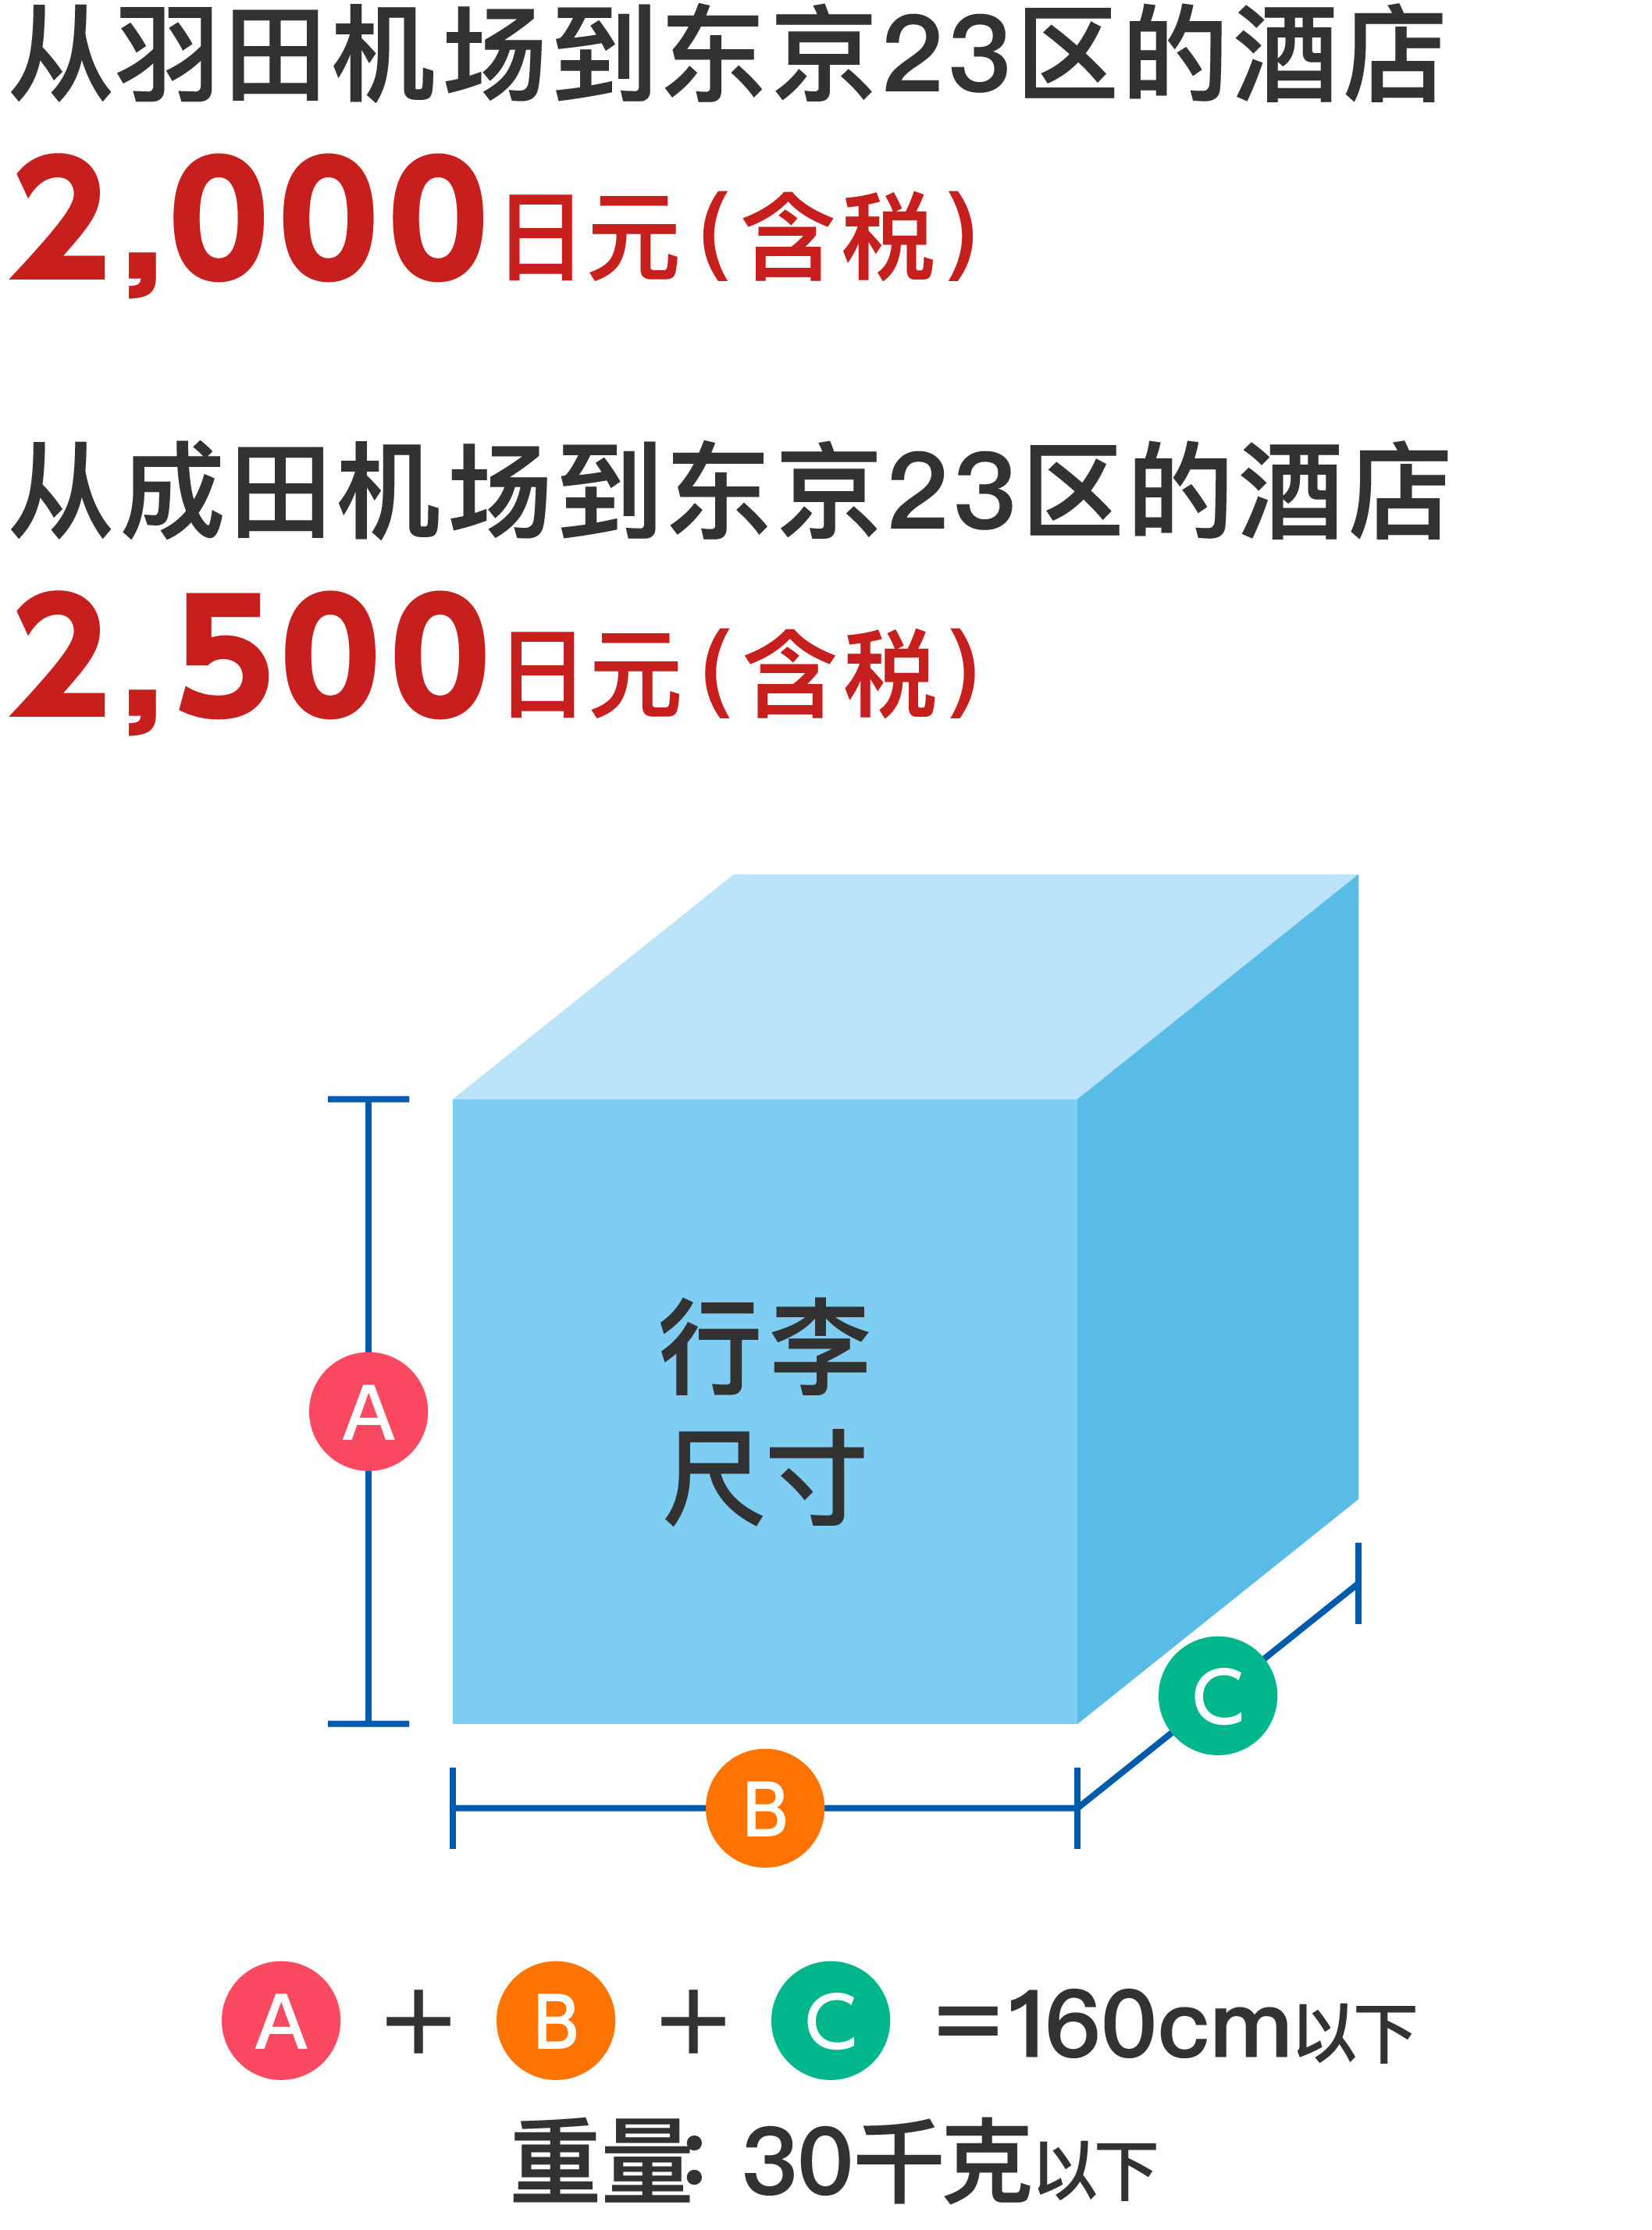 从羽田机场到东京23区的酒店
2,000 日元（含税）
从成田机场到东京23区的酒店
2,500 日元（含税）